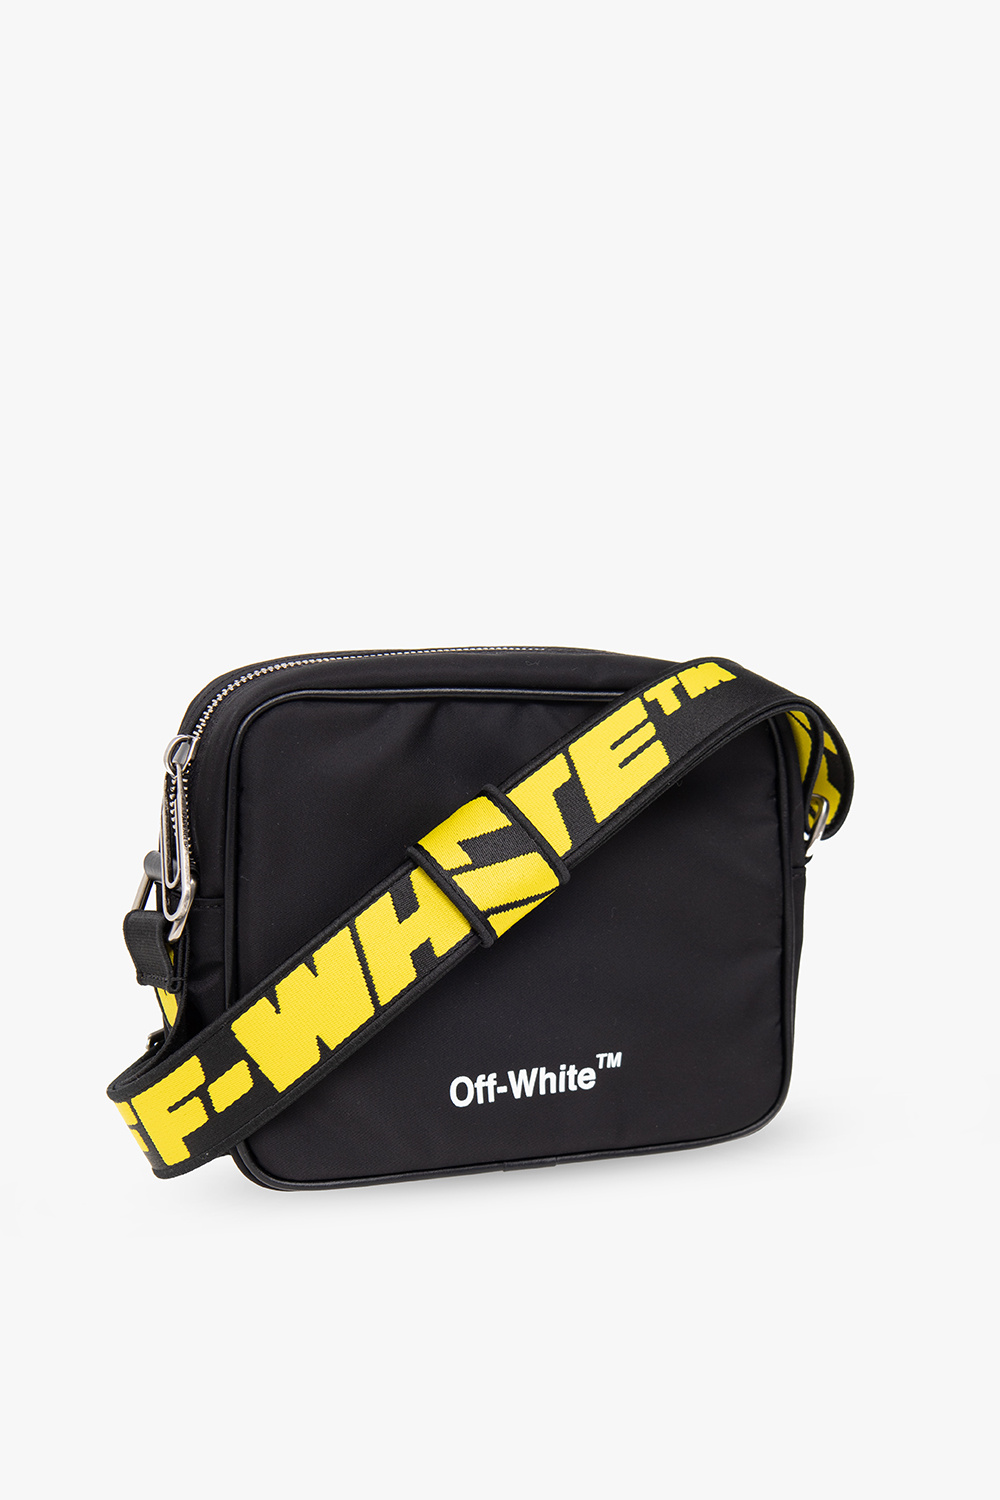 歐洲直送Supreme FW20 歐洲直送Waist bag 四色上架🎉🎉